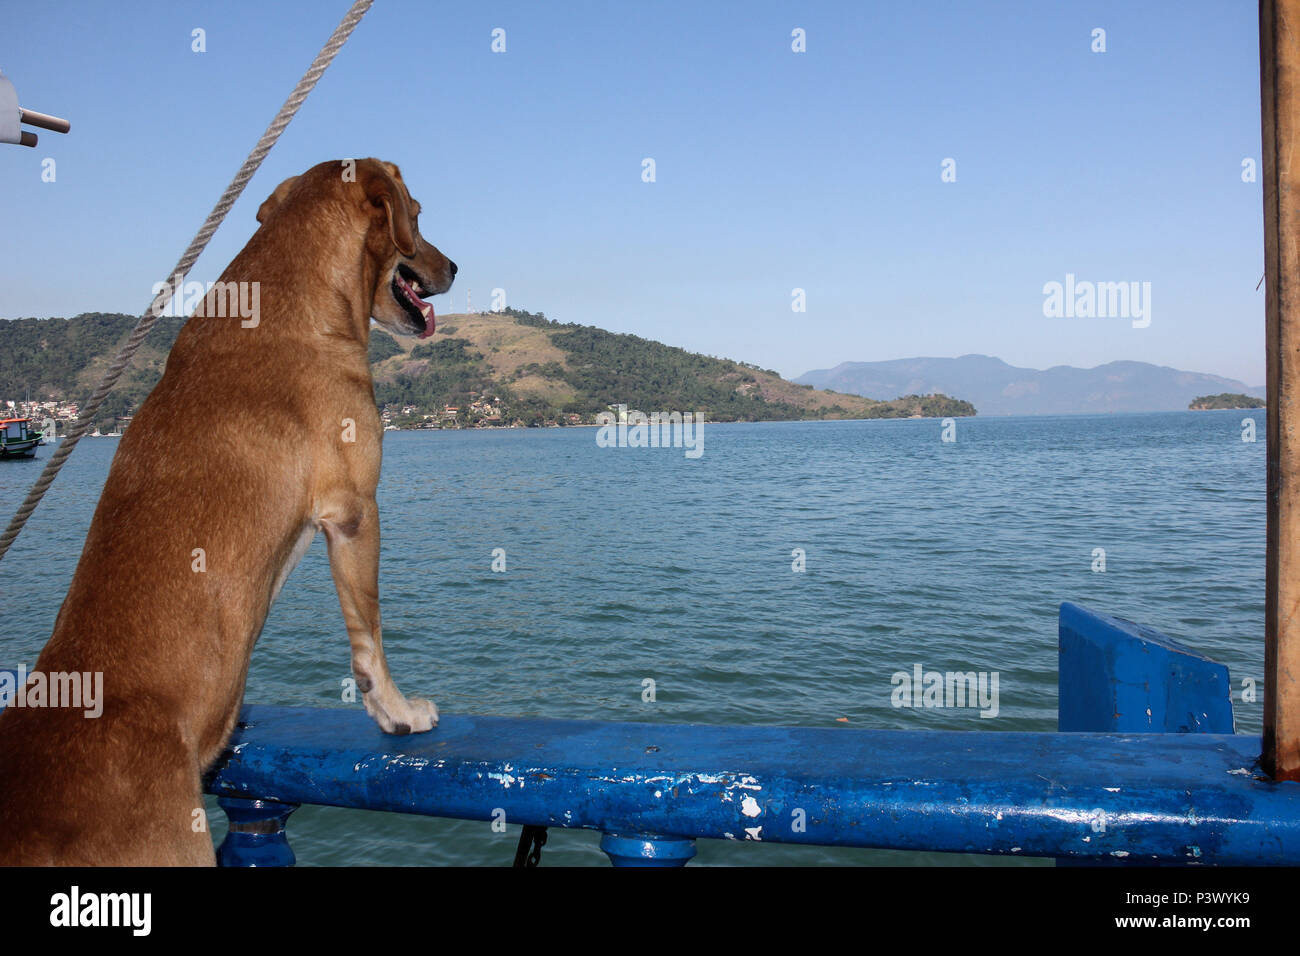 Cão de Marley, escuna nome da Deusa Maior, observa o mar em busca de golfinhos, que São vistos frequentemente na região de Angra dos Reis, sin litoral sul do Rio de Janeiro. Foto de stock